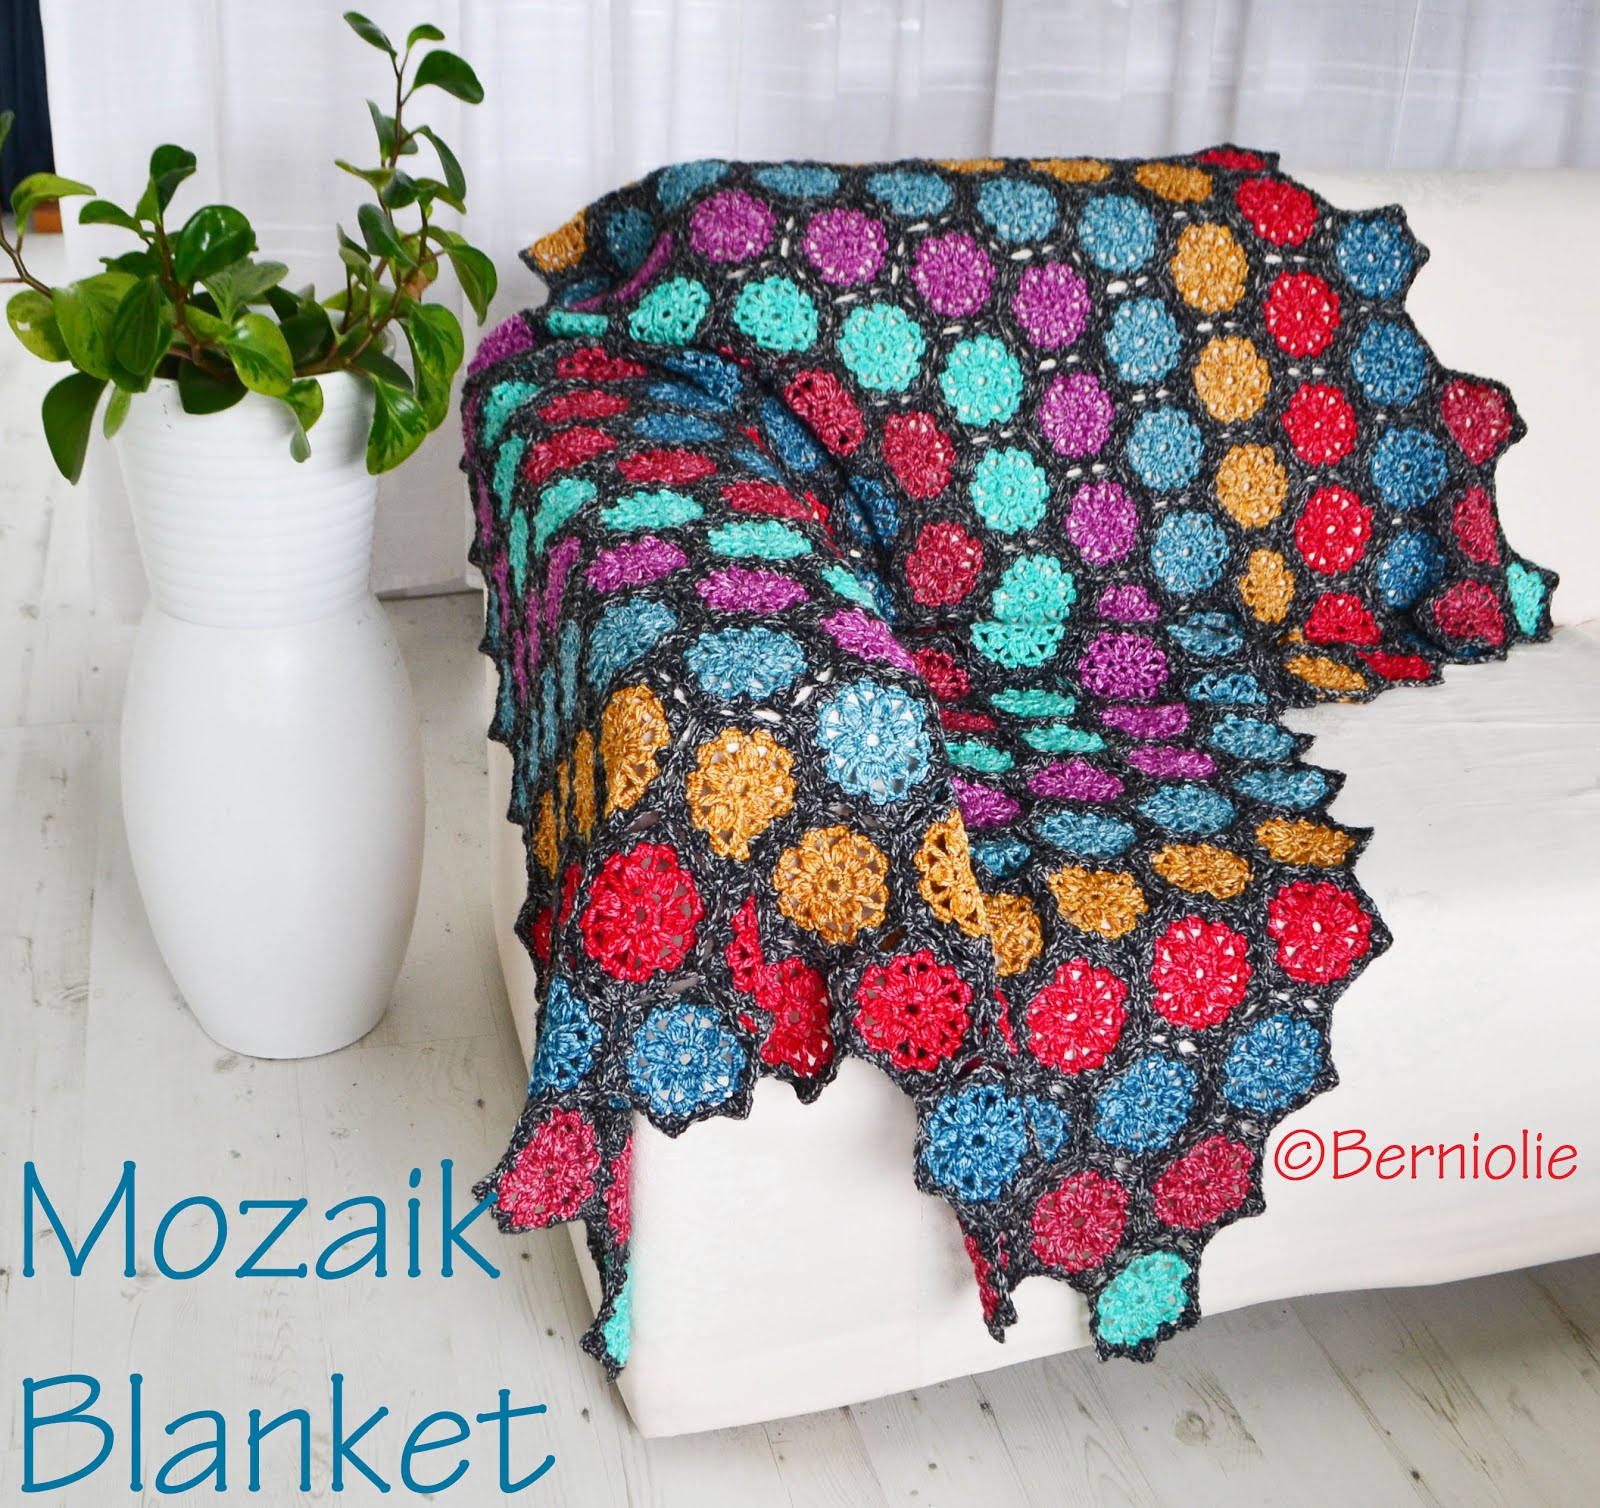 Mozaik Blanket